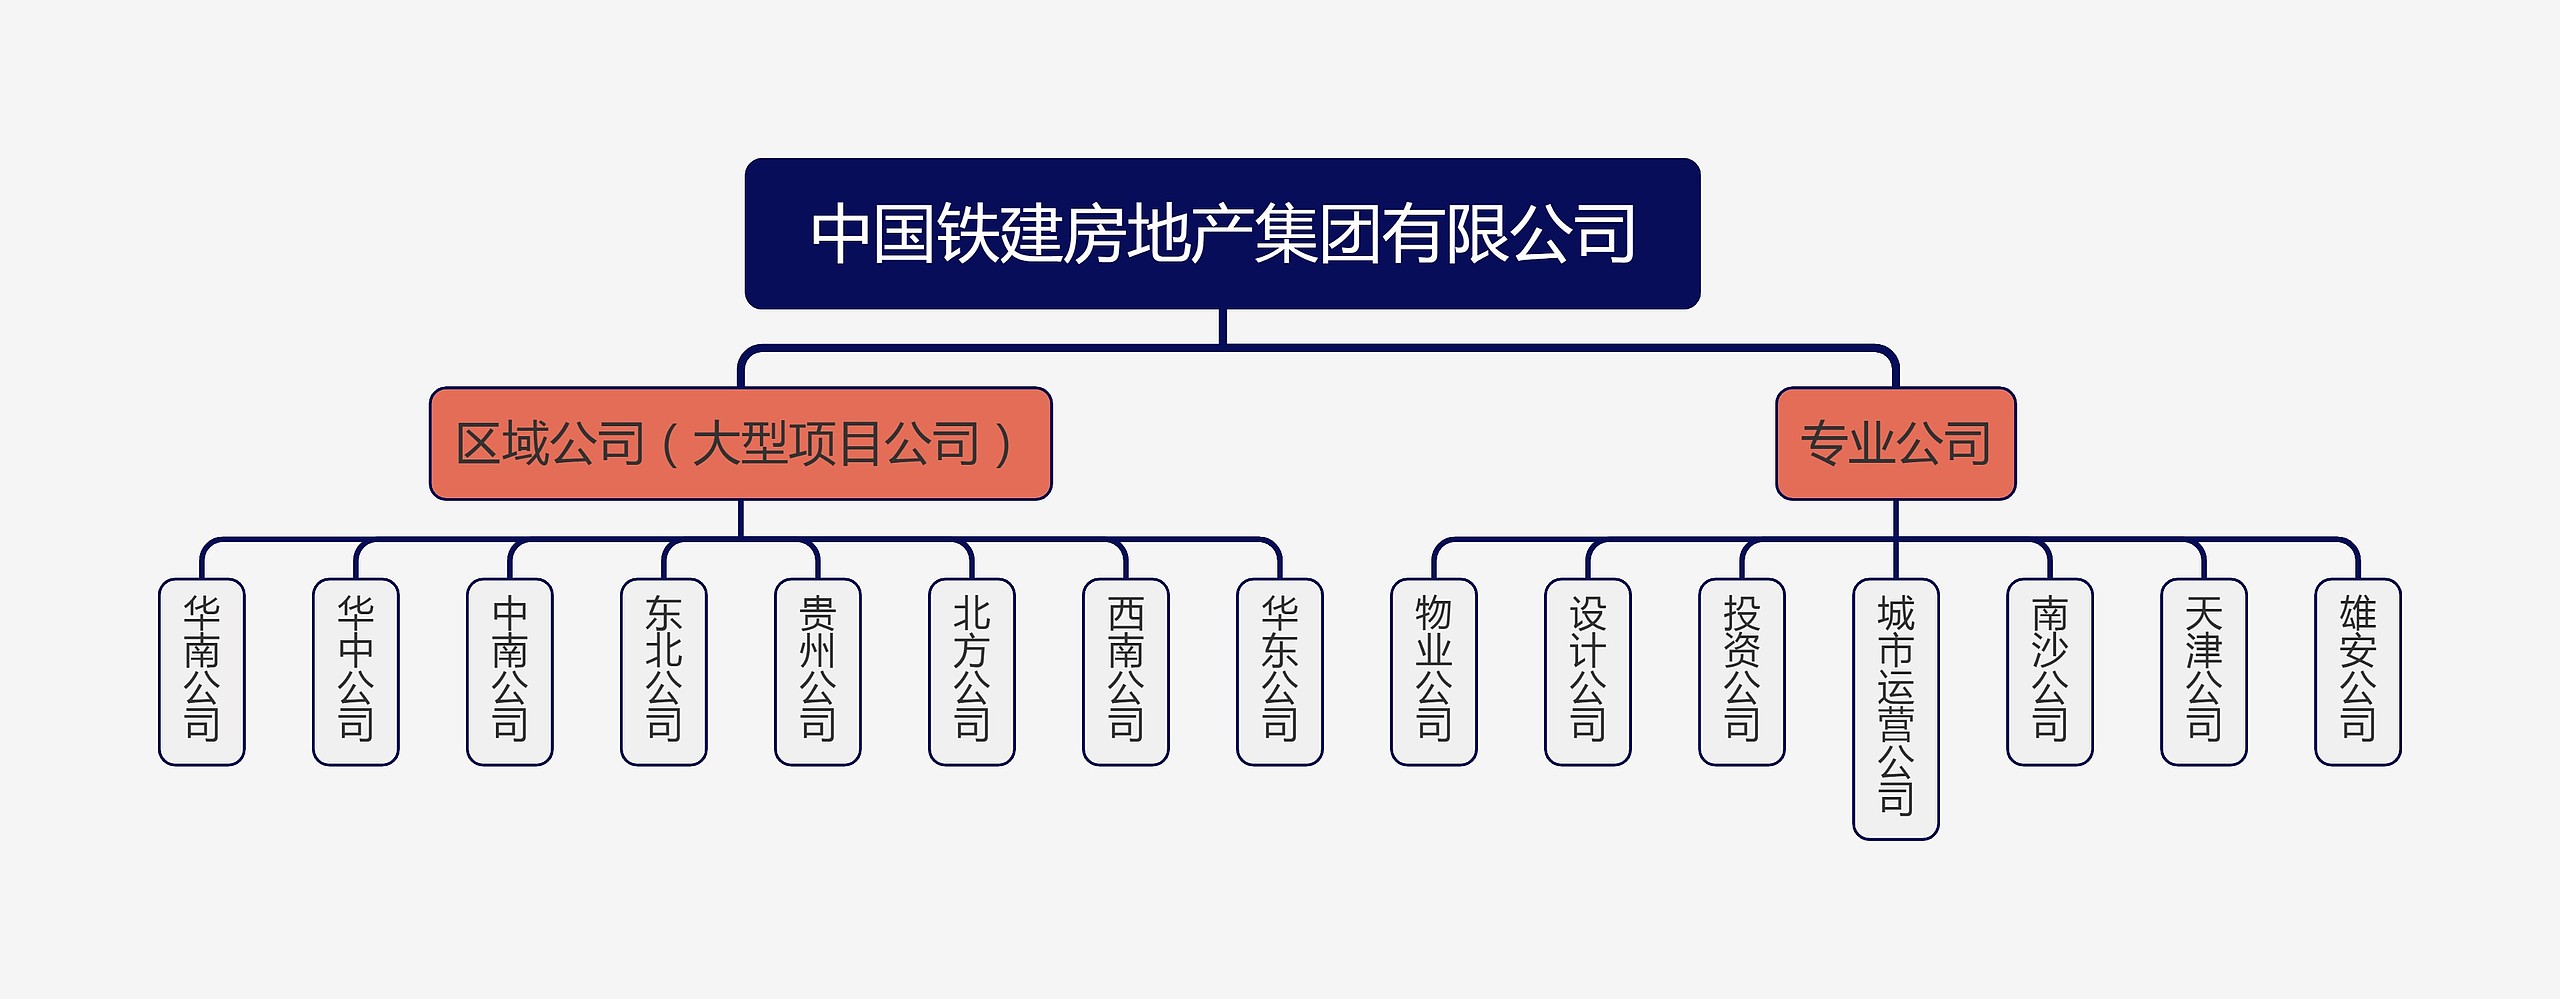 中国铁建房地产集团有限公司组织架构图思维导图